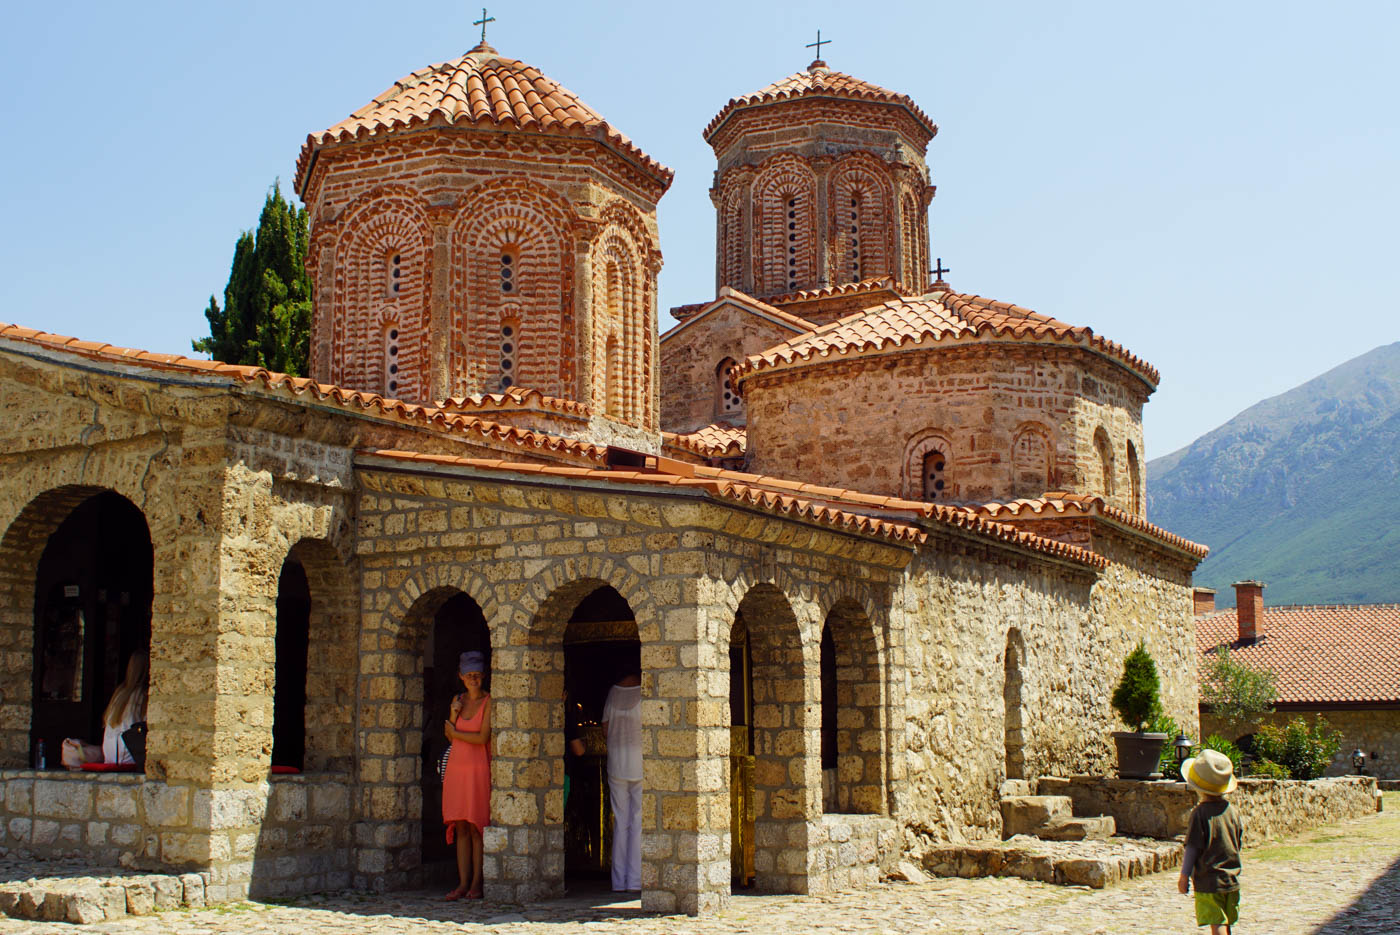 Im Vordergrund steht Luk mit Hut und blickt auf die Kirche von Sveti Naum. Lea steht in einem der Bögen und blickt lächelnd zu Luk